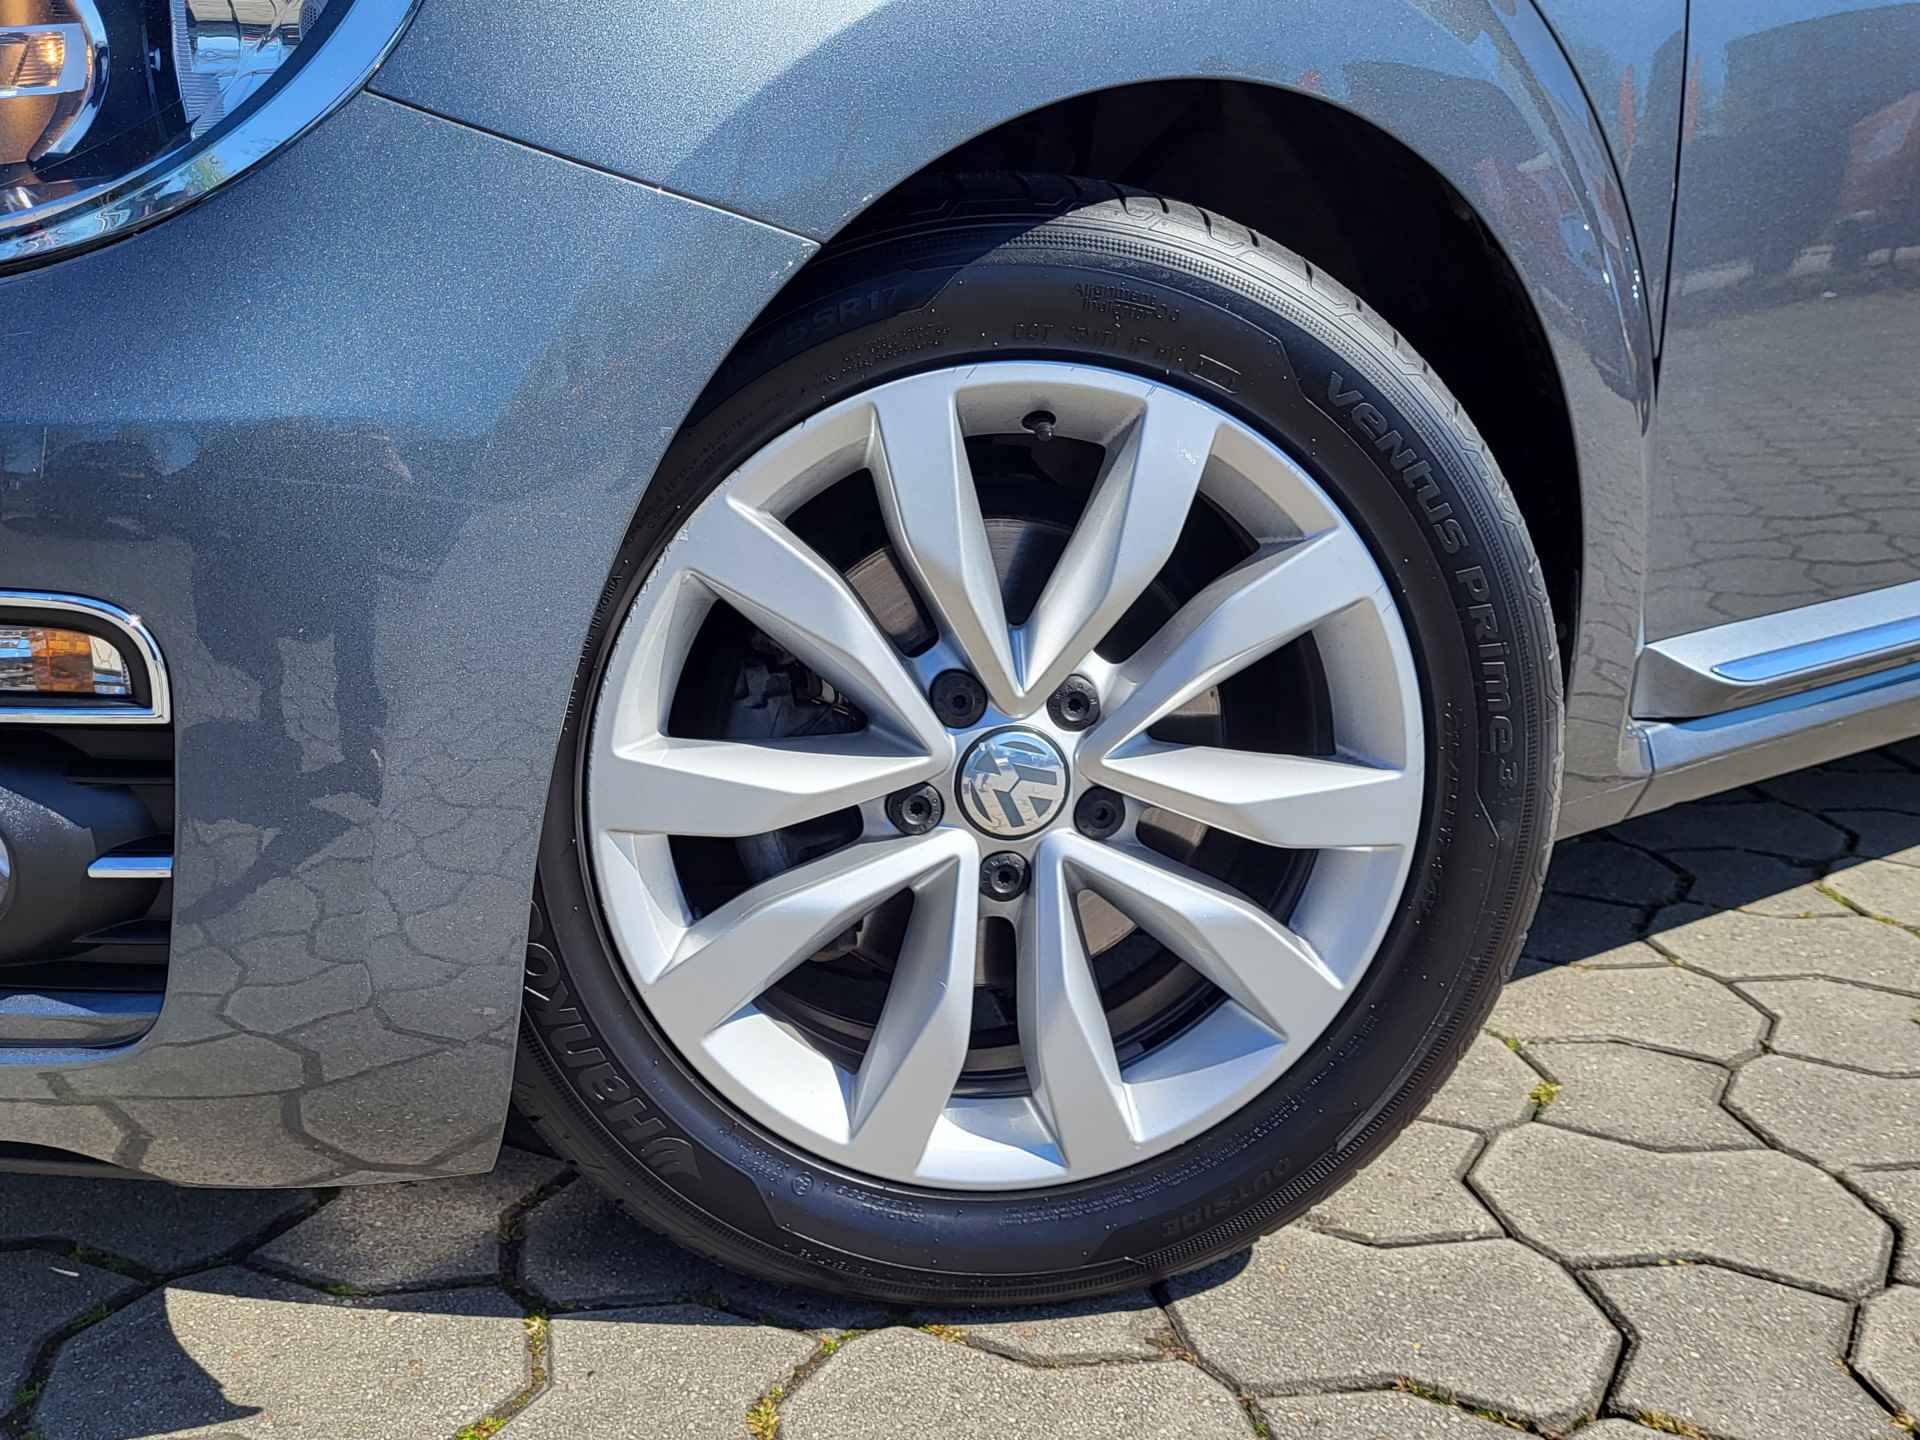 Volkswagen Beetle Cabriolet 1.2 TSI Exclusive Series, Rijklaar met beurt & garantie! - 8/27